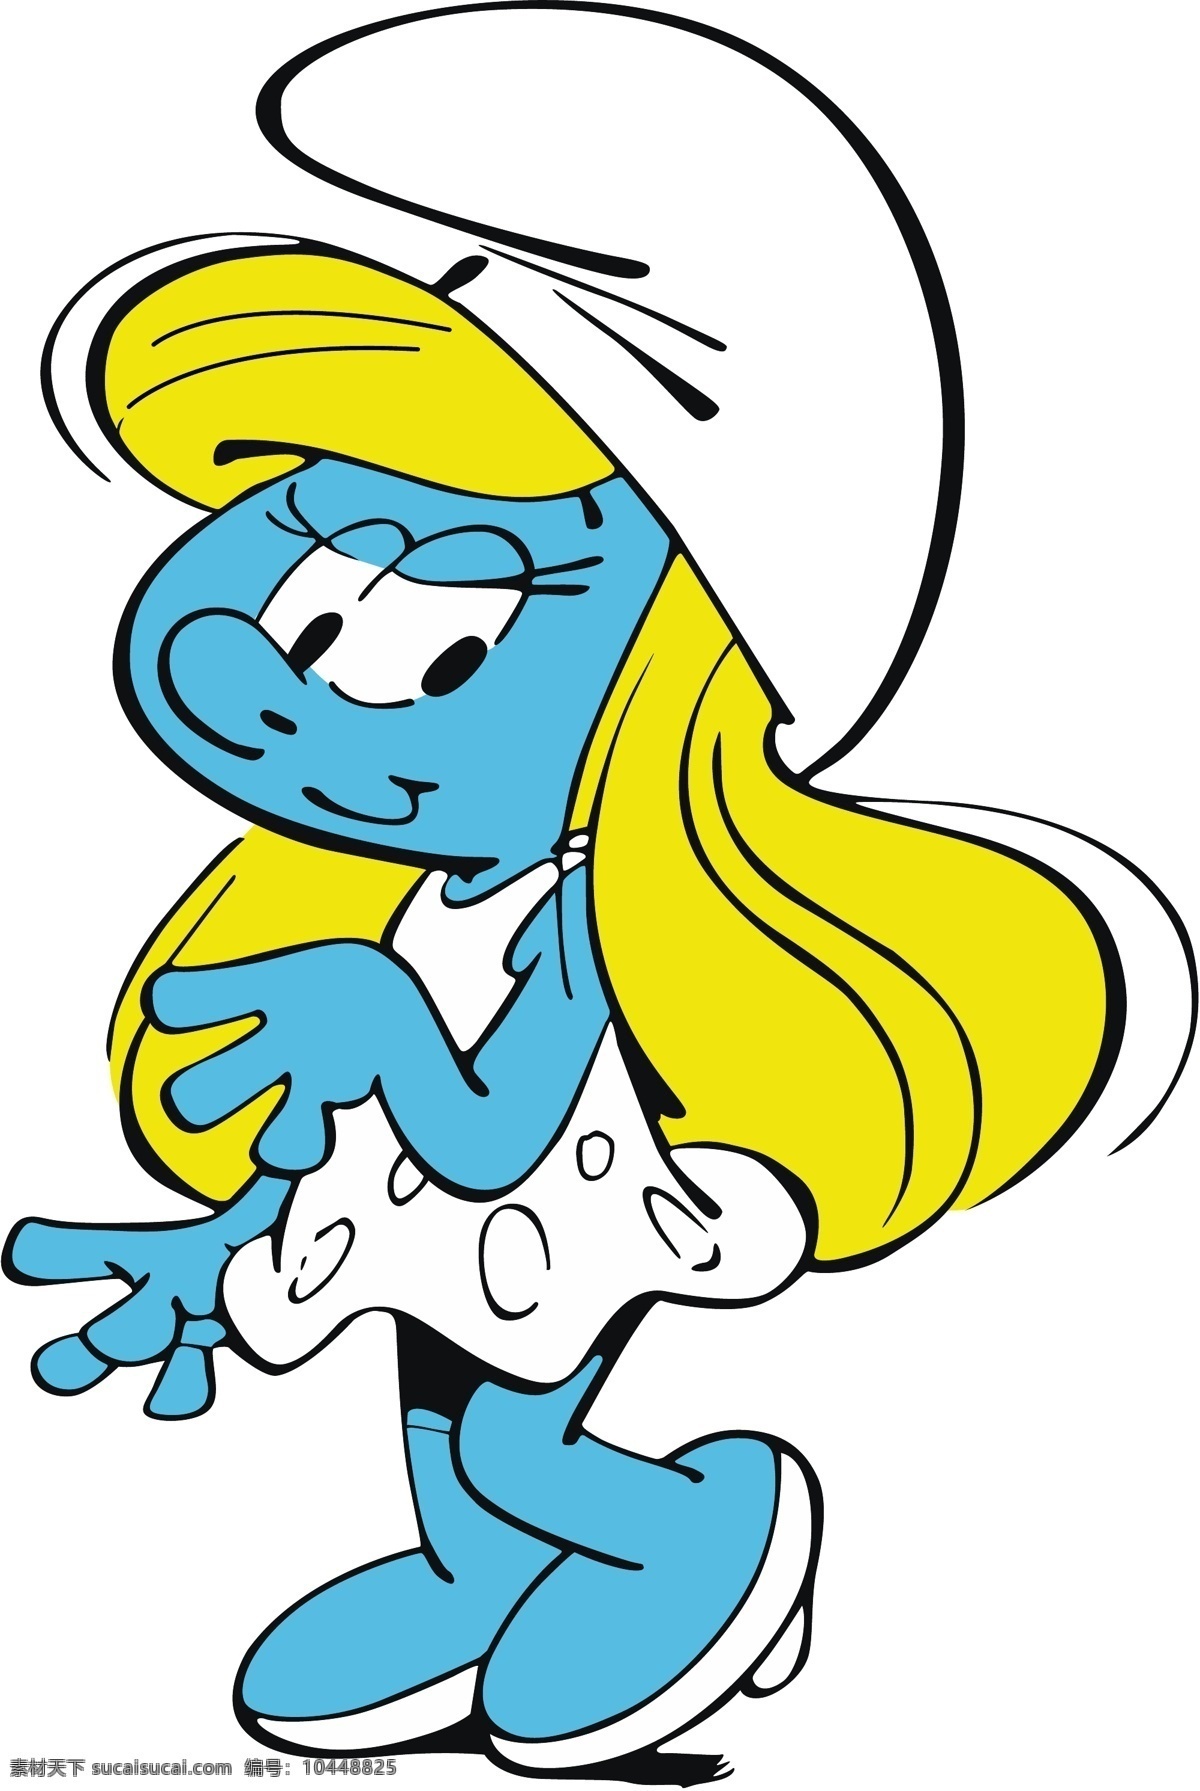 蓝妹妹 蓝精灵 卡通矢量图 卡通 矢量图 图案 动漫动画 动漫人物